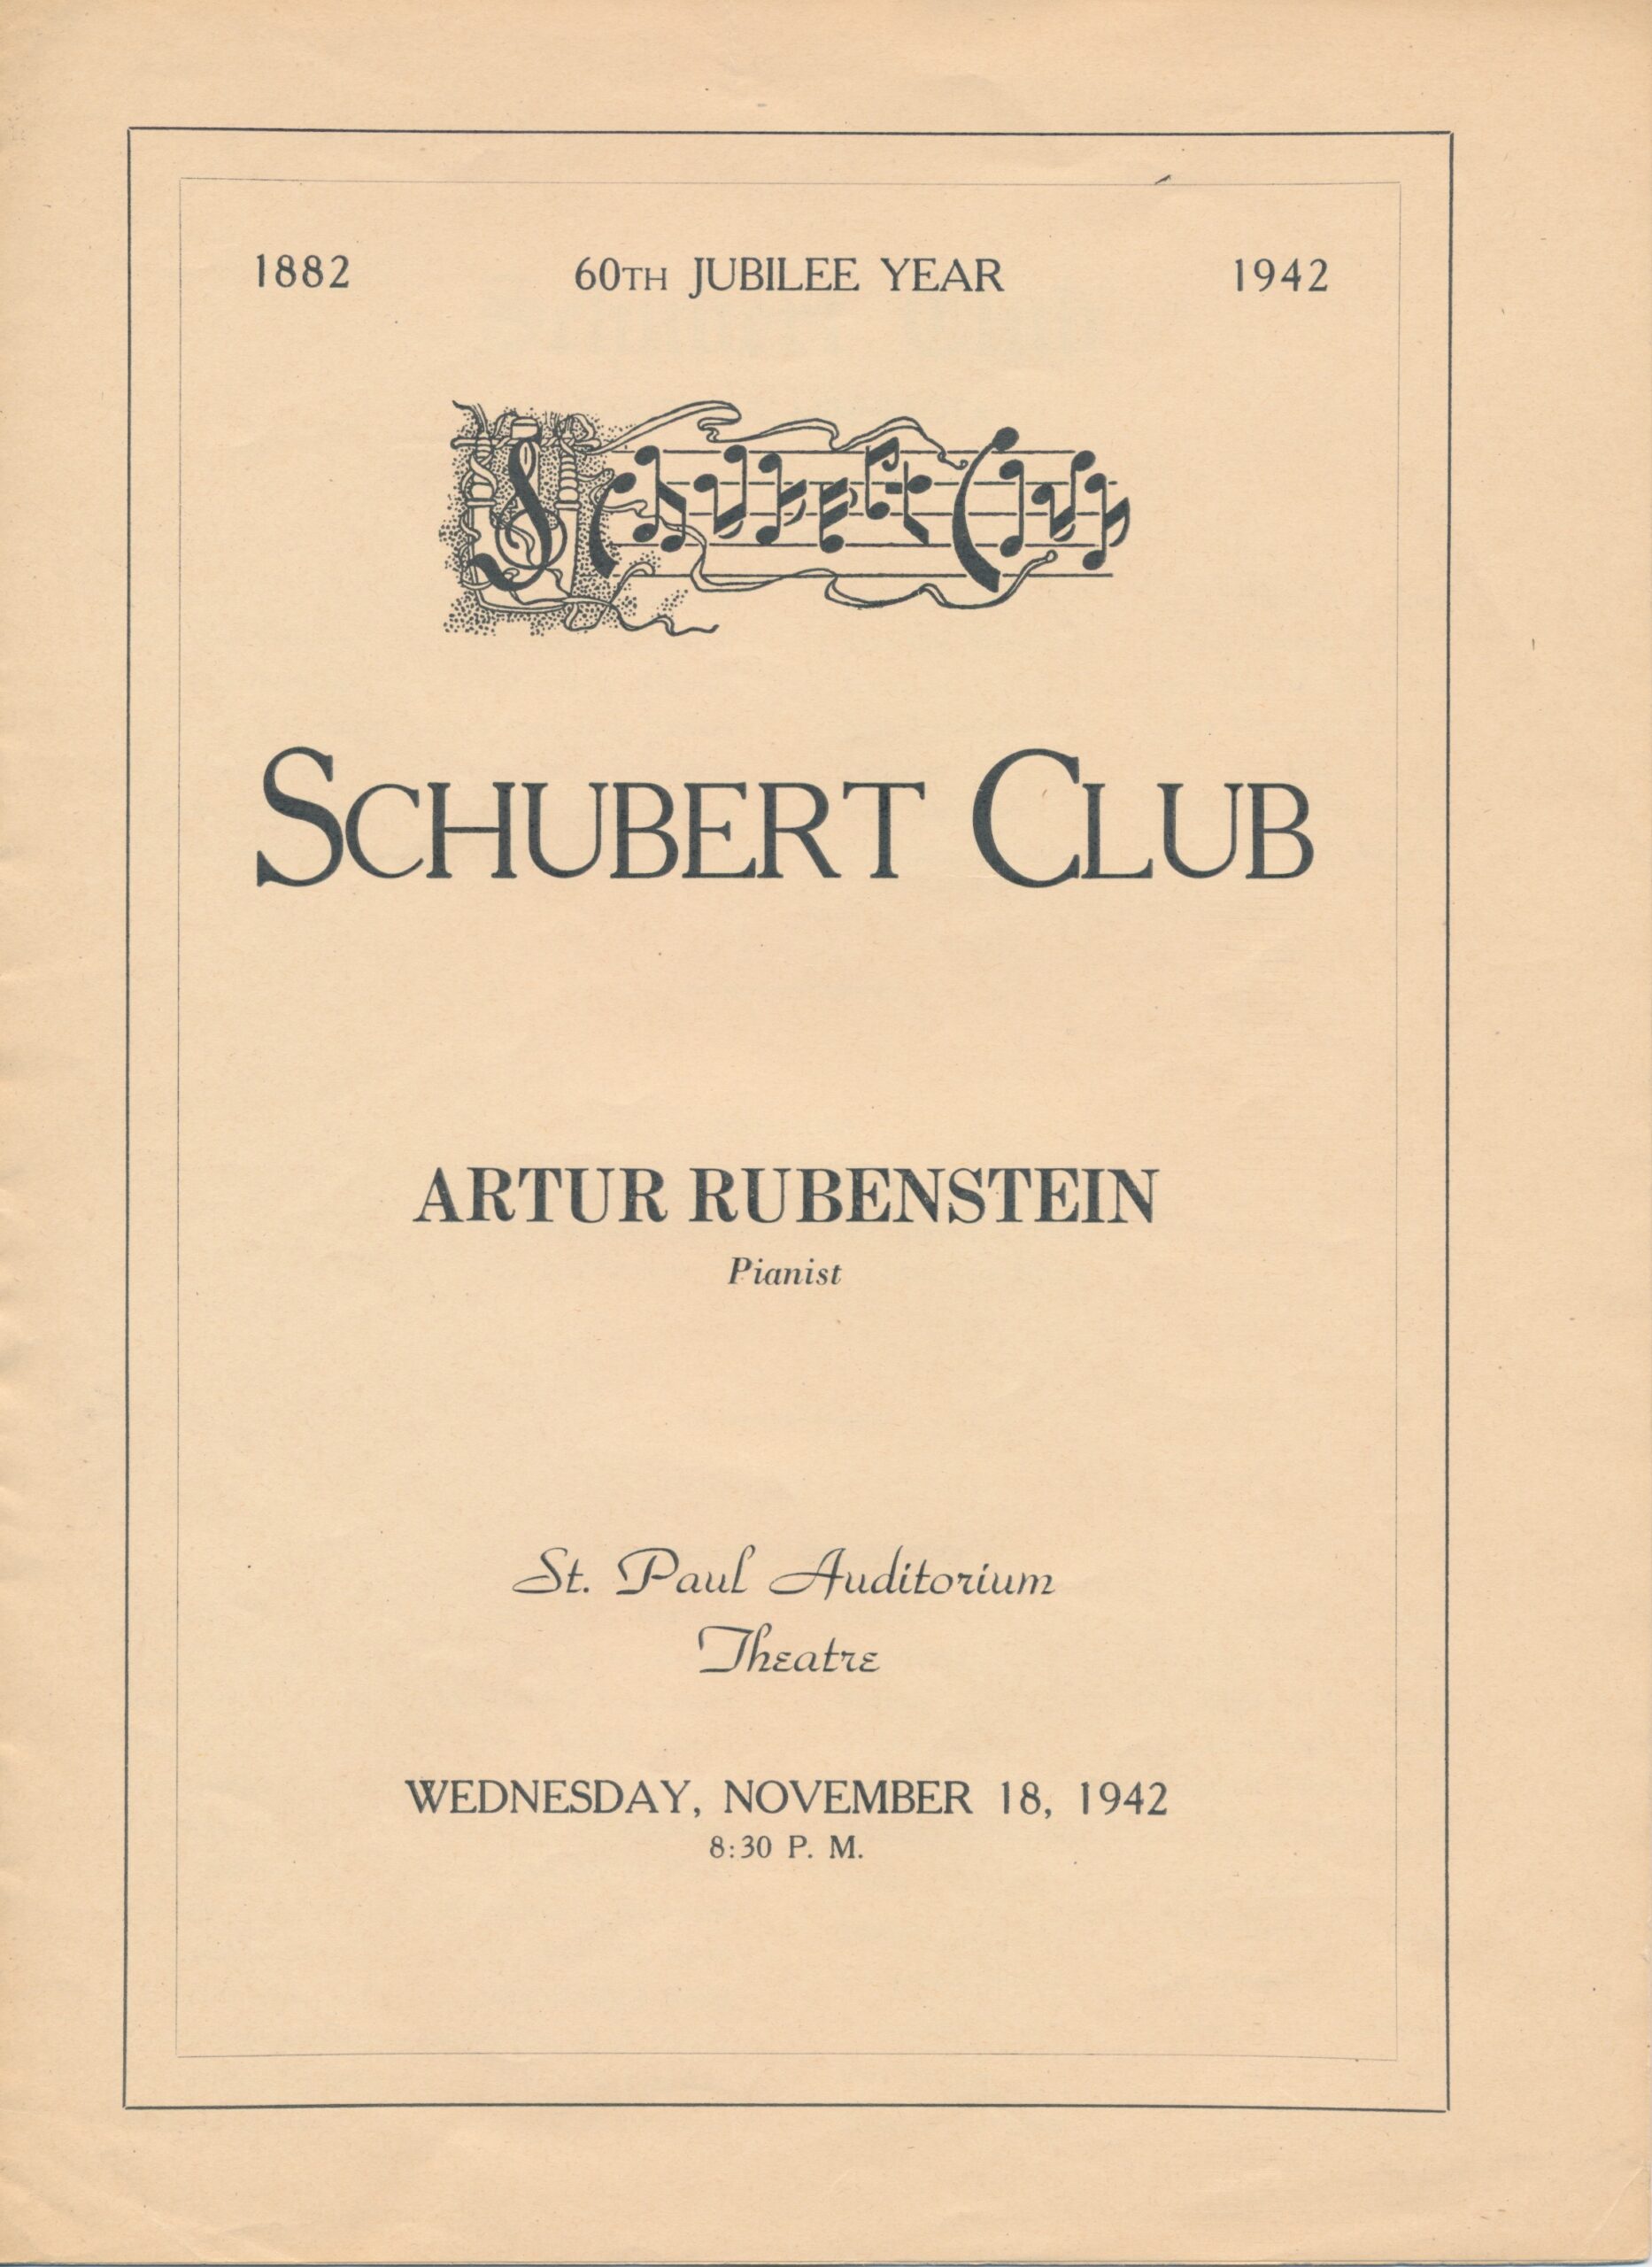 Arthur Rubinstein - Wikipedia